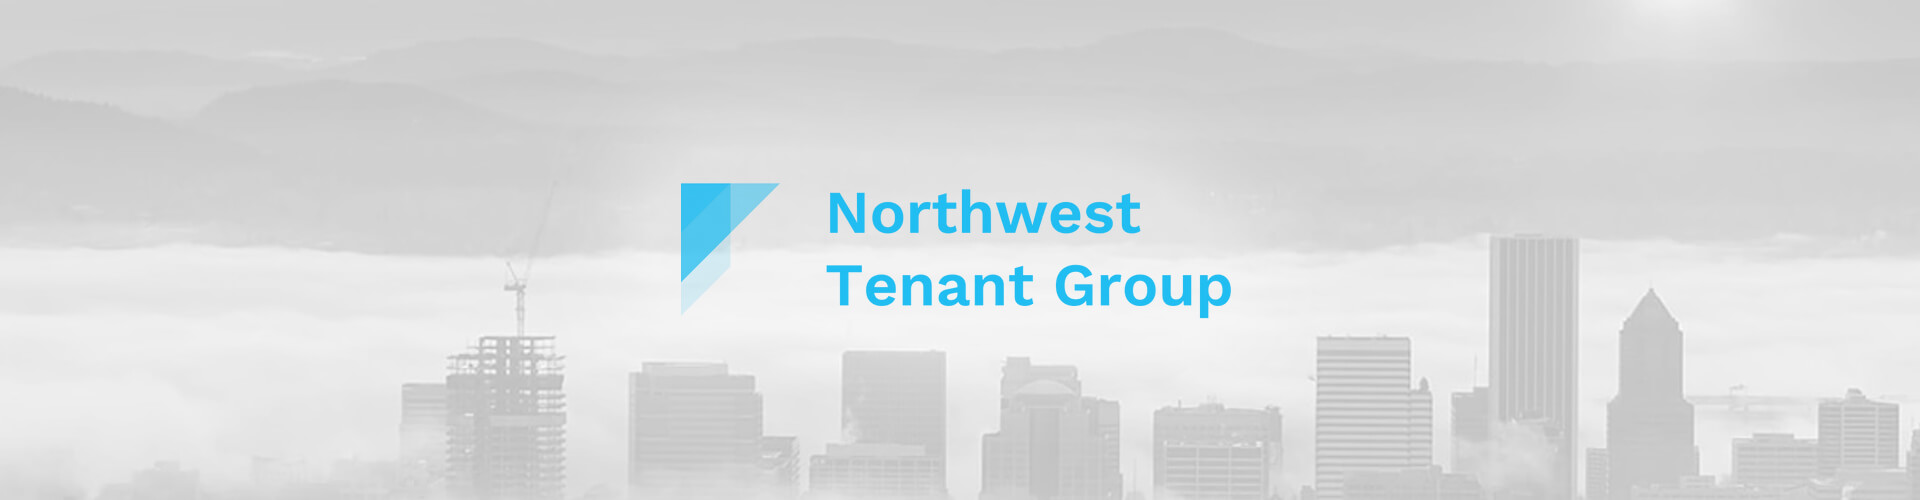 Case Study - Northwest Tenant Group